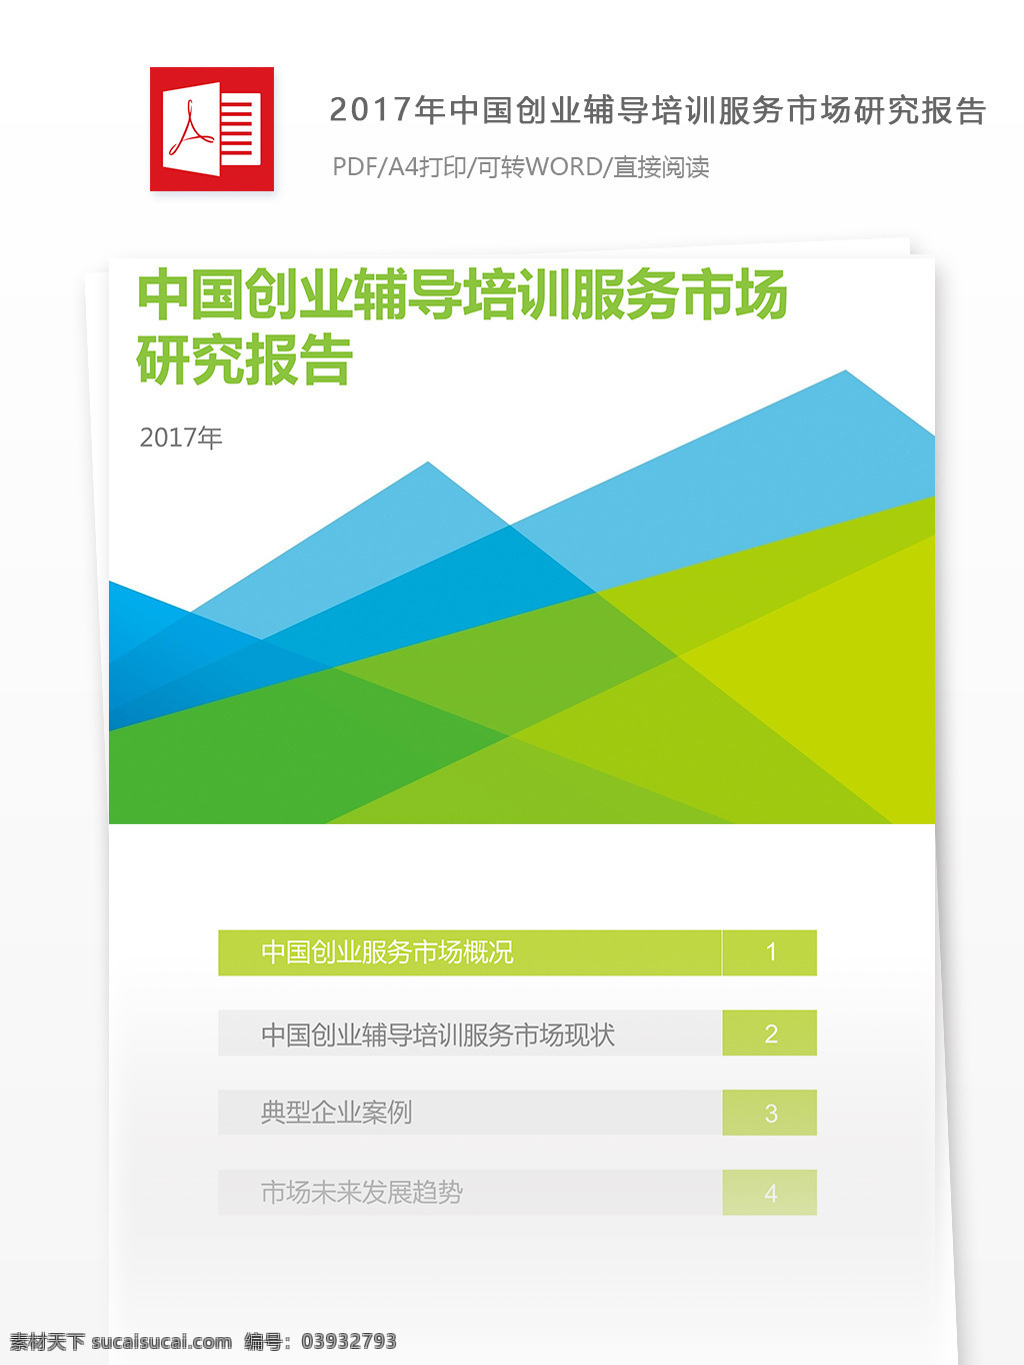 中国 创业 辅导 培训服务 市场研究 分析报告 字 实例 创业辅导 创业培训 行业分析报告 大数据 数据报告 投资报告 投资行业 投资分析 移动技术